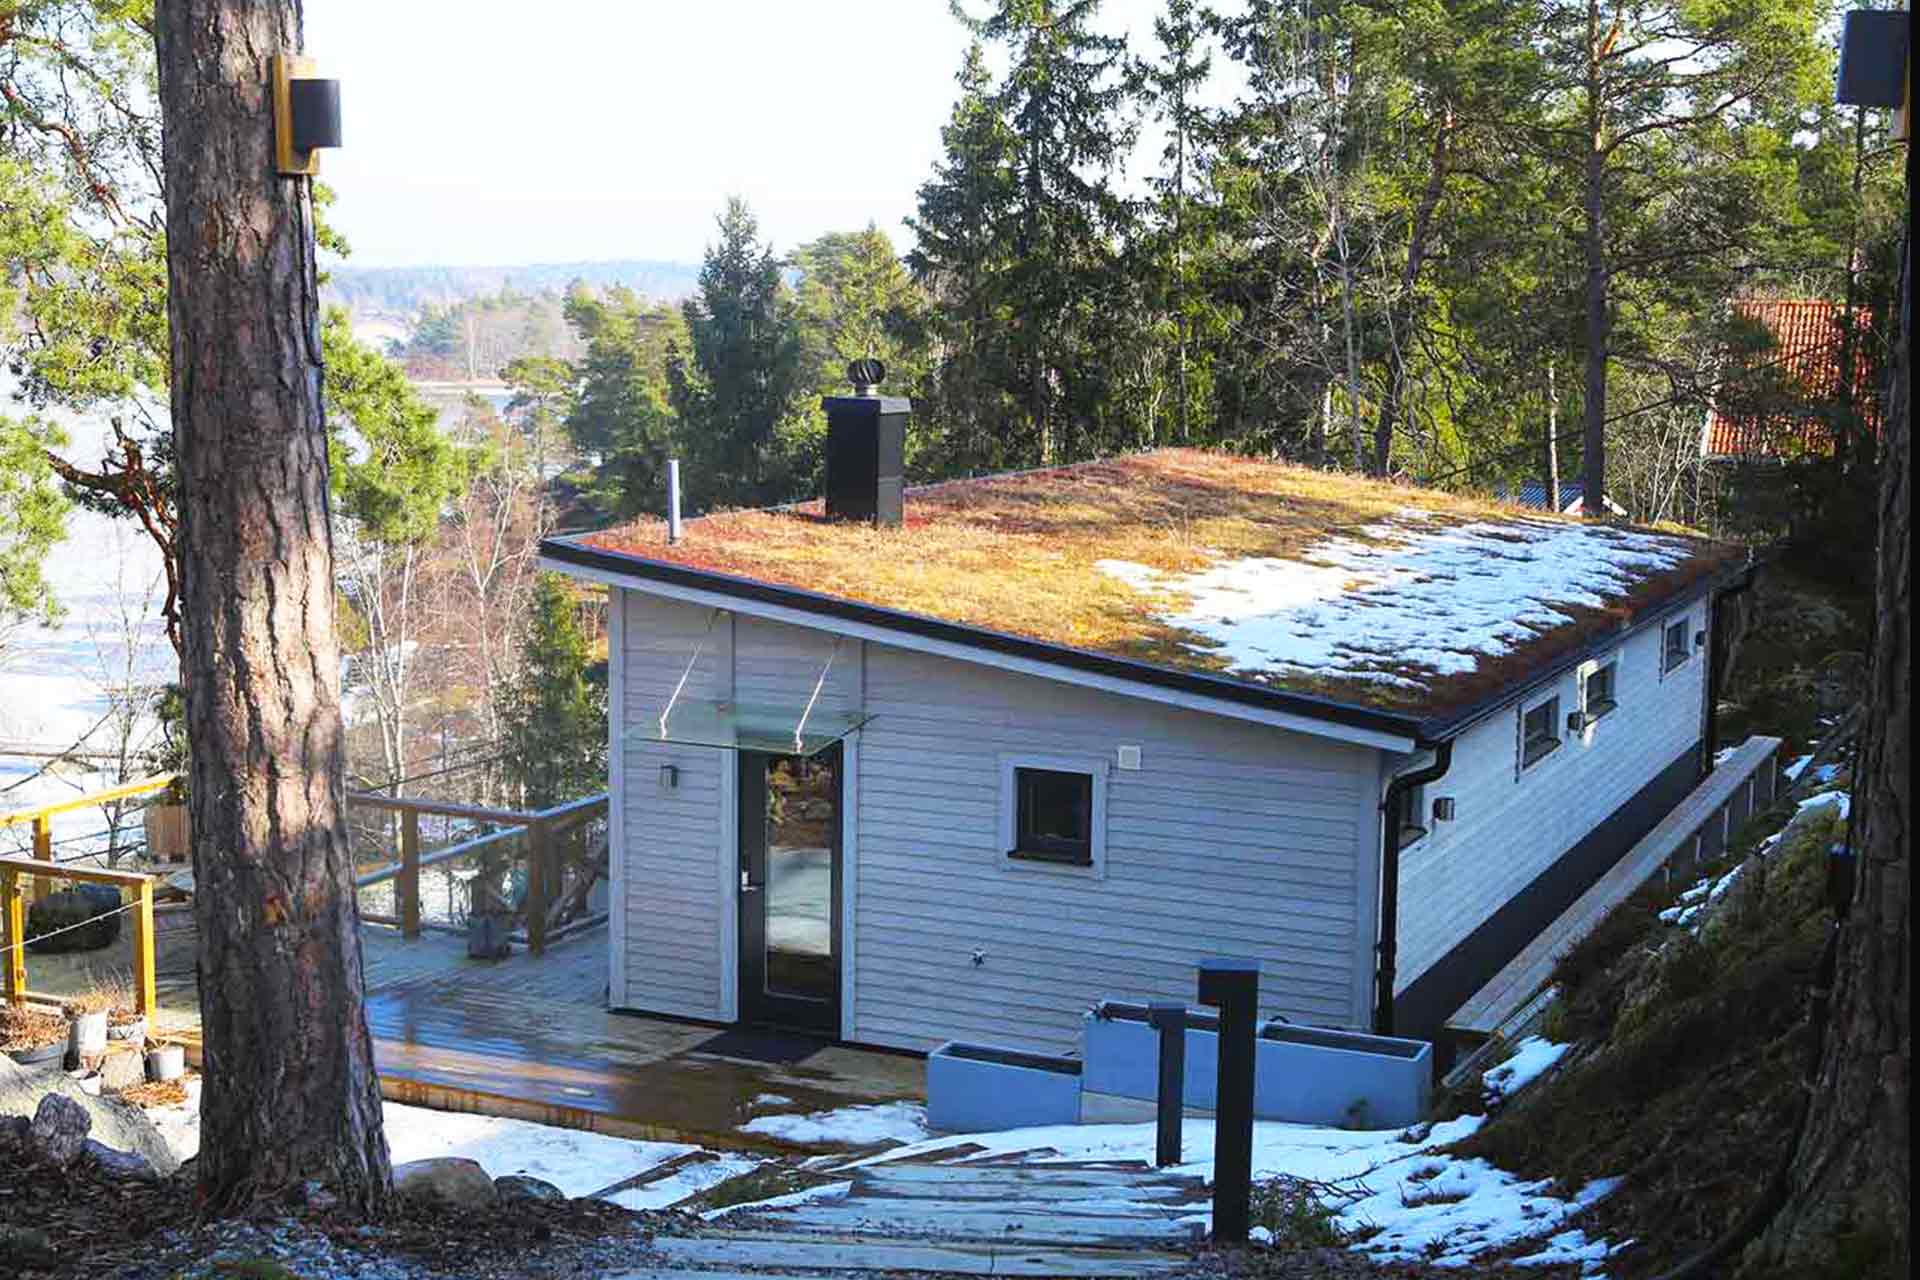 Sedum växer på taket till attefallshuset ritat av arkitekt Anders Frelin. I bakgrunden syns skogen och skärgårdshavet.